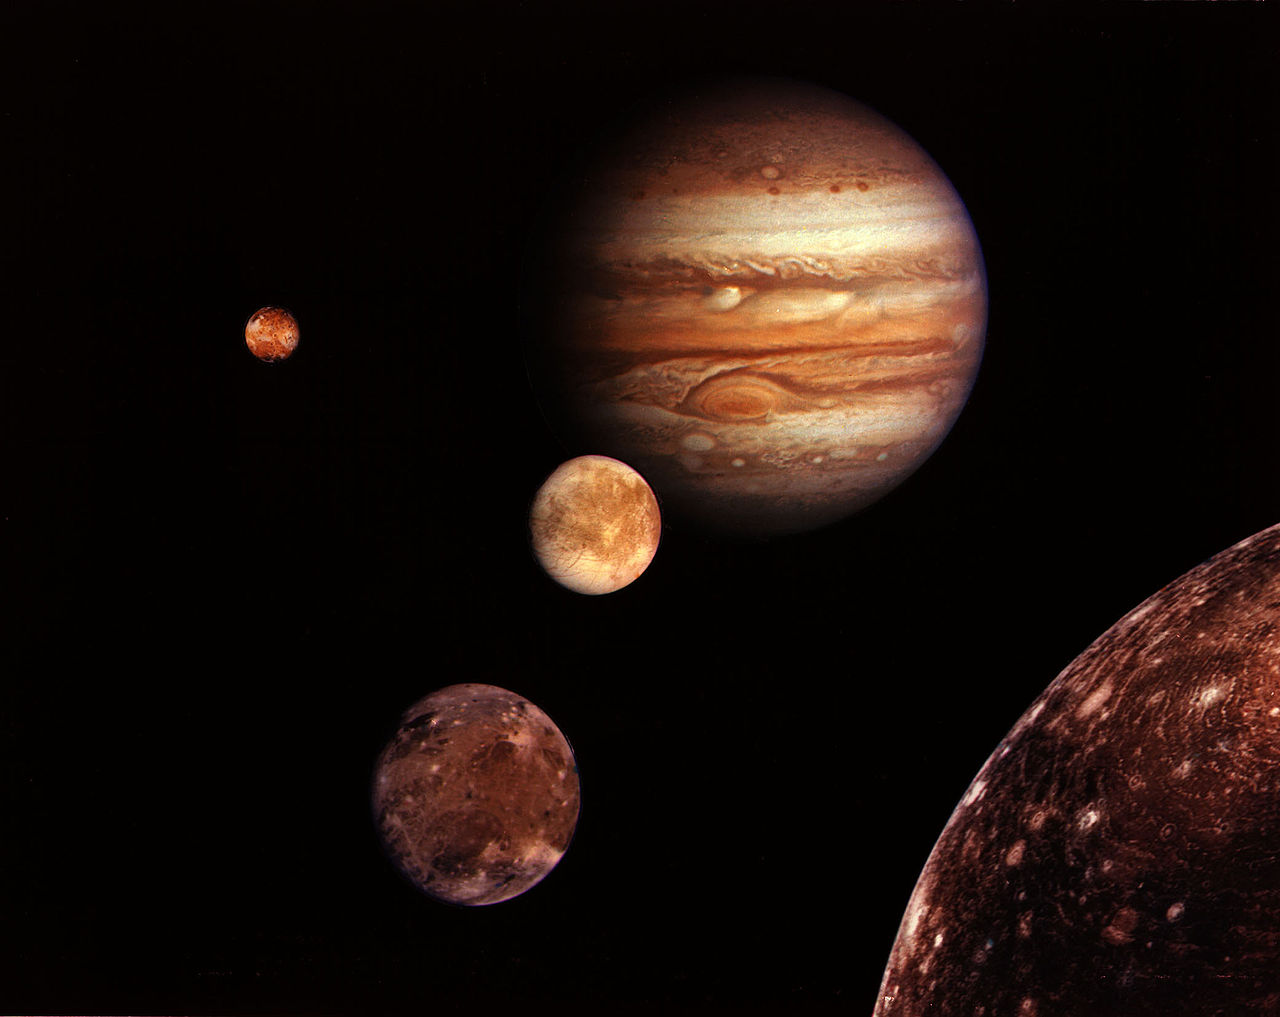 Jupiter and moons.